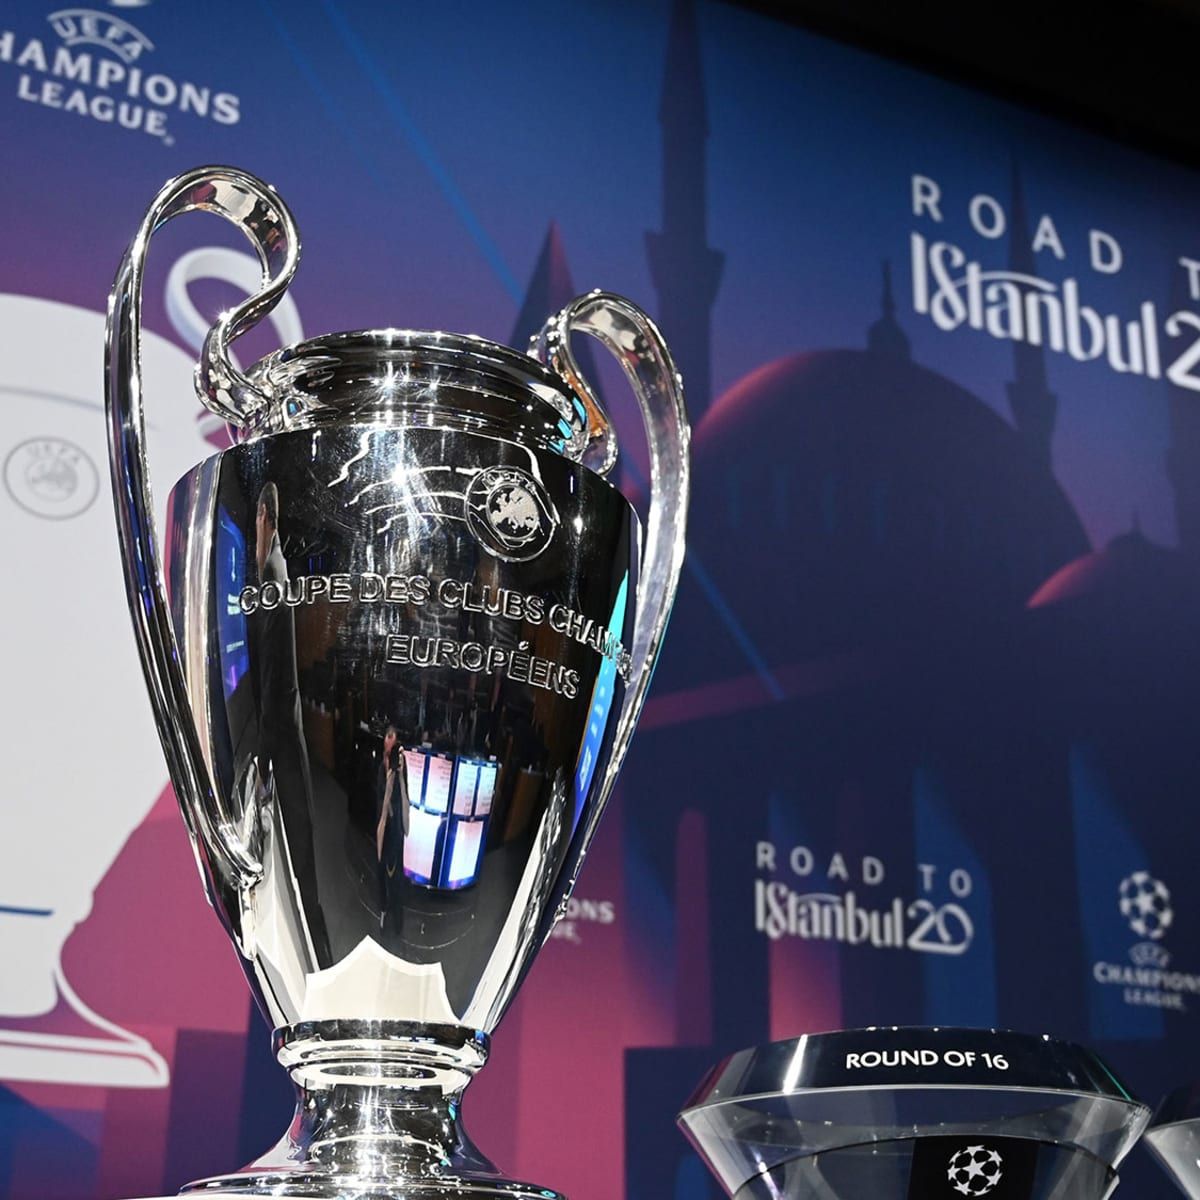 Champions League final: UEFA's August plan seems dubious at best